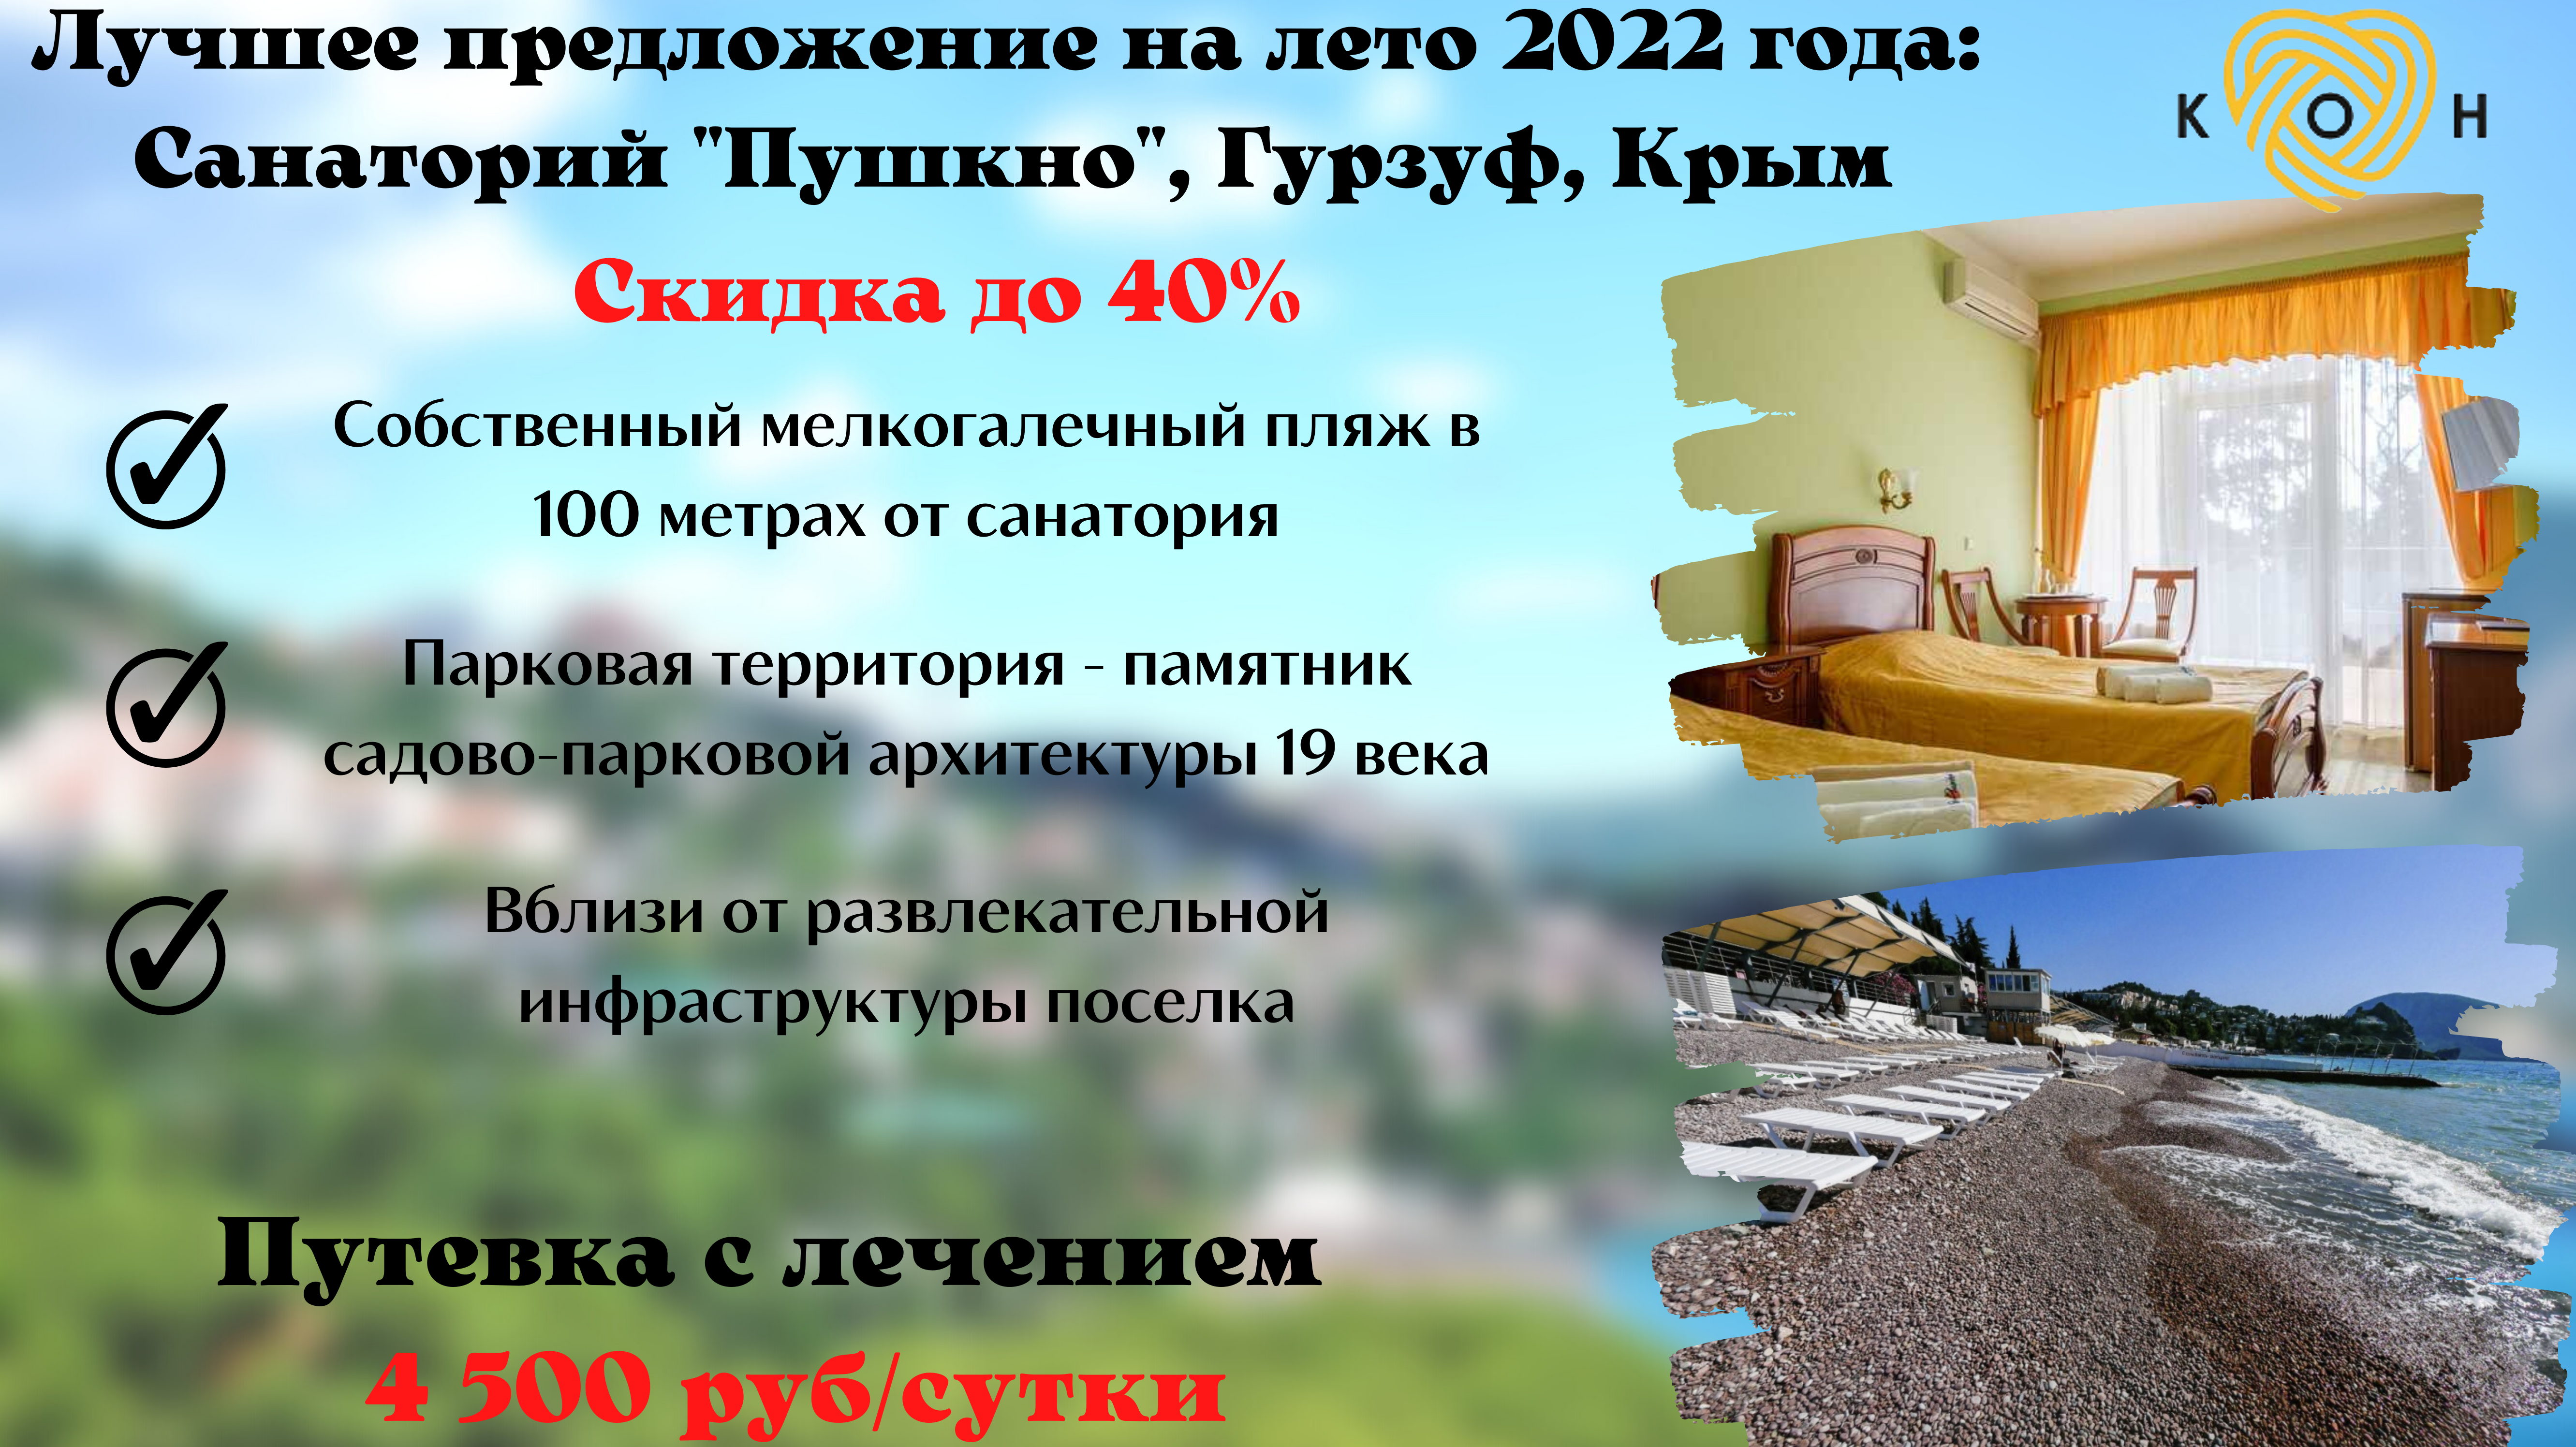 Скидка до 40%: Курортный комплекс «Гурзуф-Центр», санаторий «Пушкино», п. Гурзуф